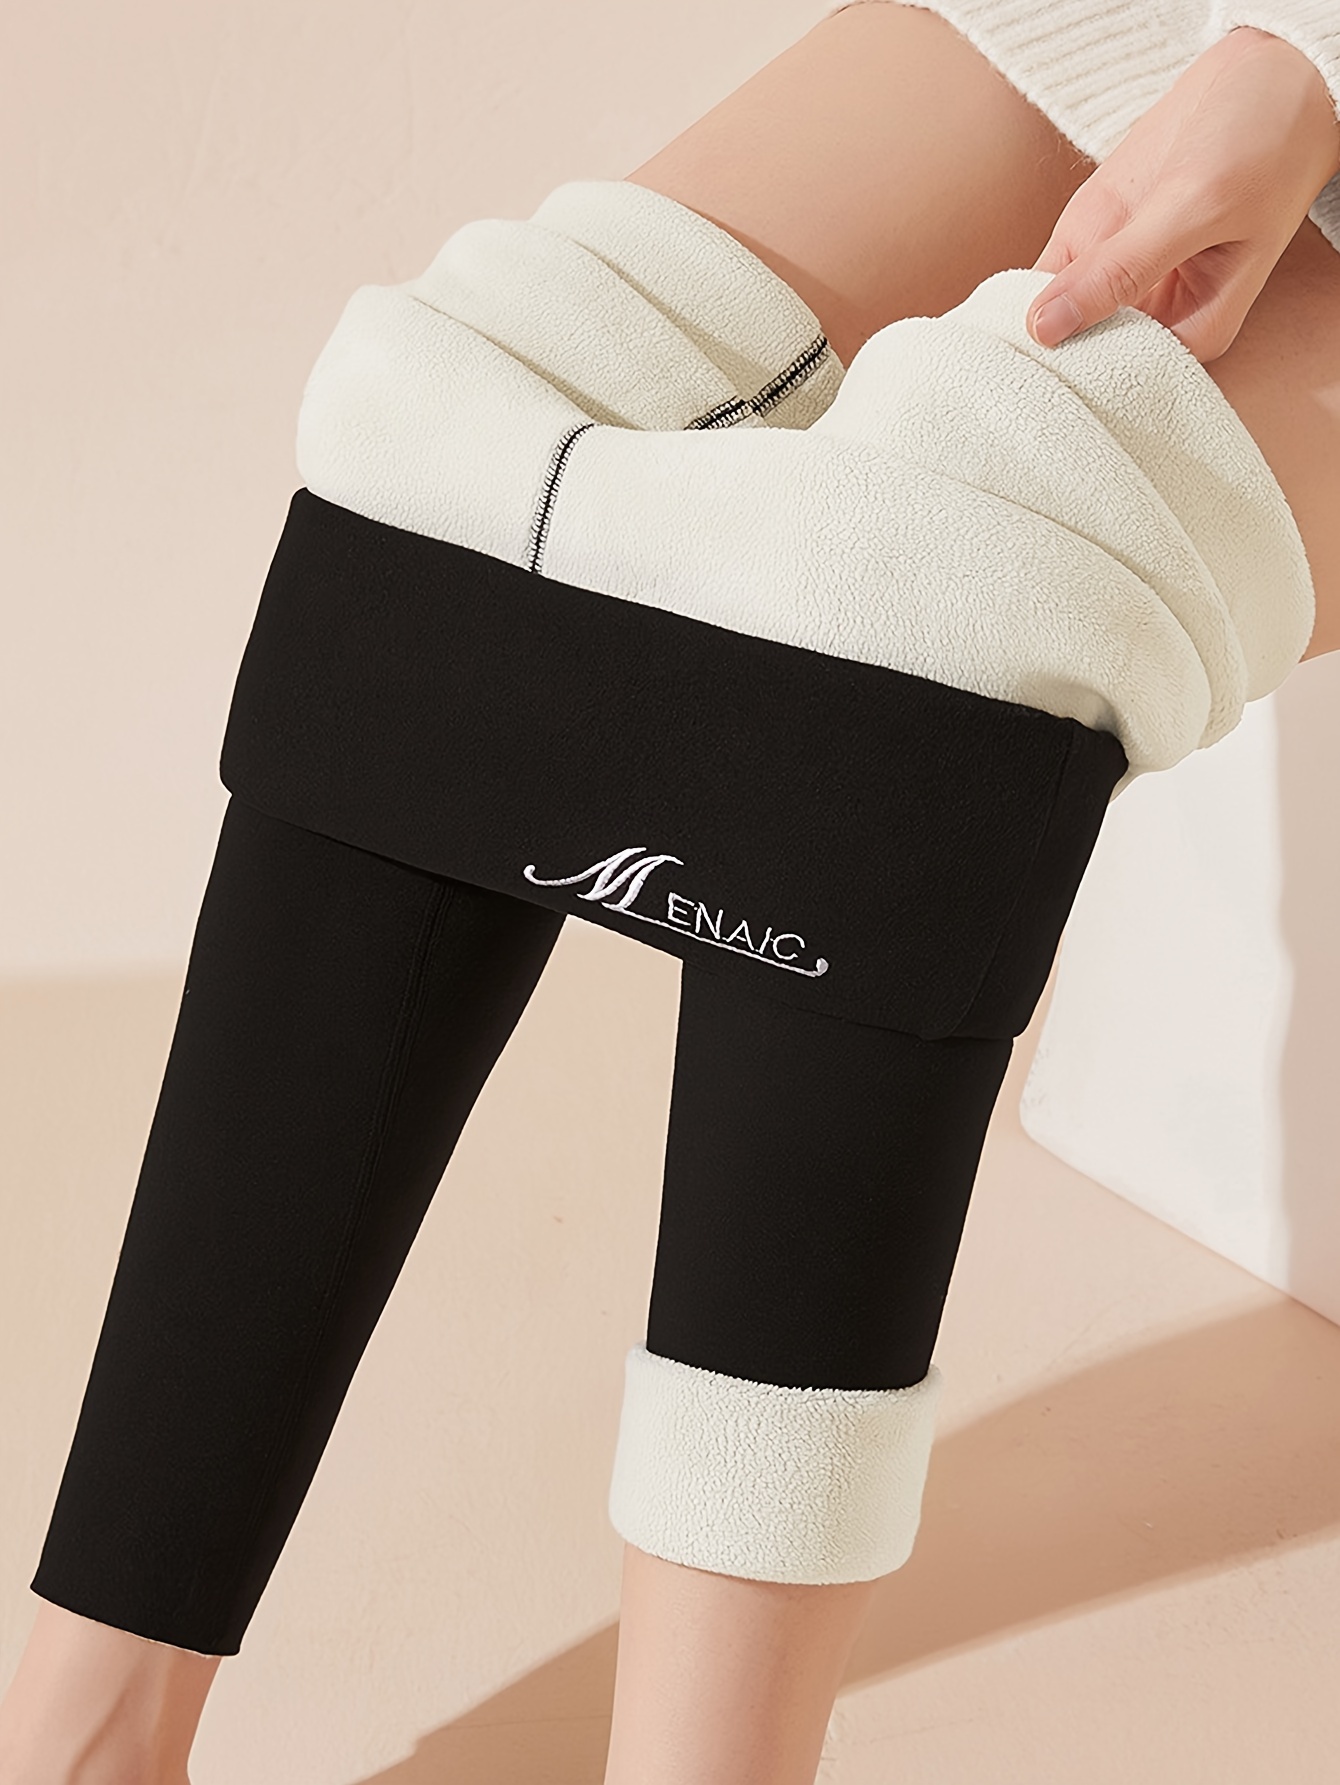 Denim Leggings Thermal Fleece Denim Jeggings, Jeans Leggings for Women High  Waist Stretchy, Stylish & Skinny